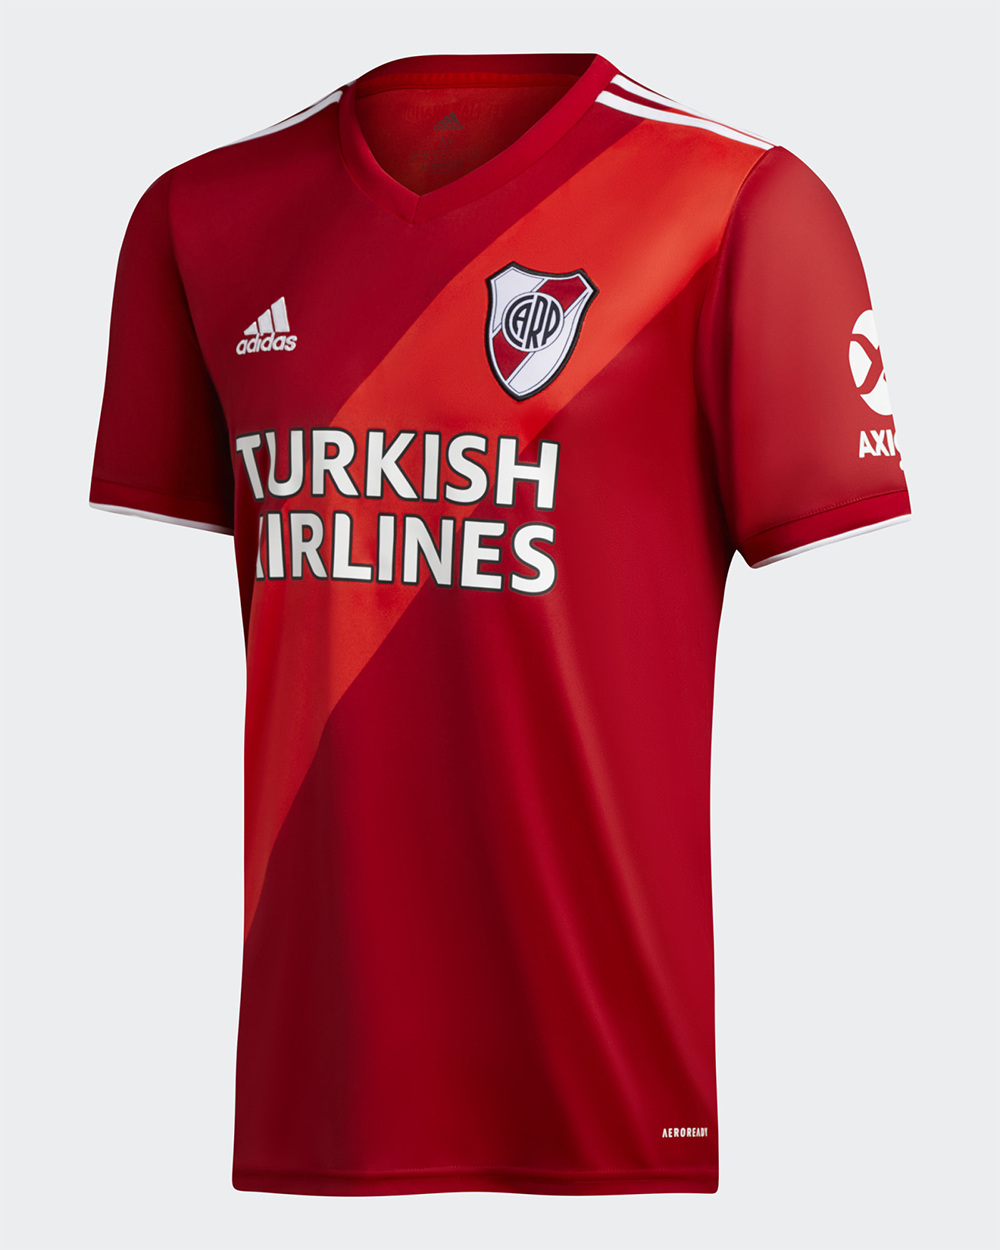 Camiseta alternativa adidas de River Plate 2020 2021 Frente